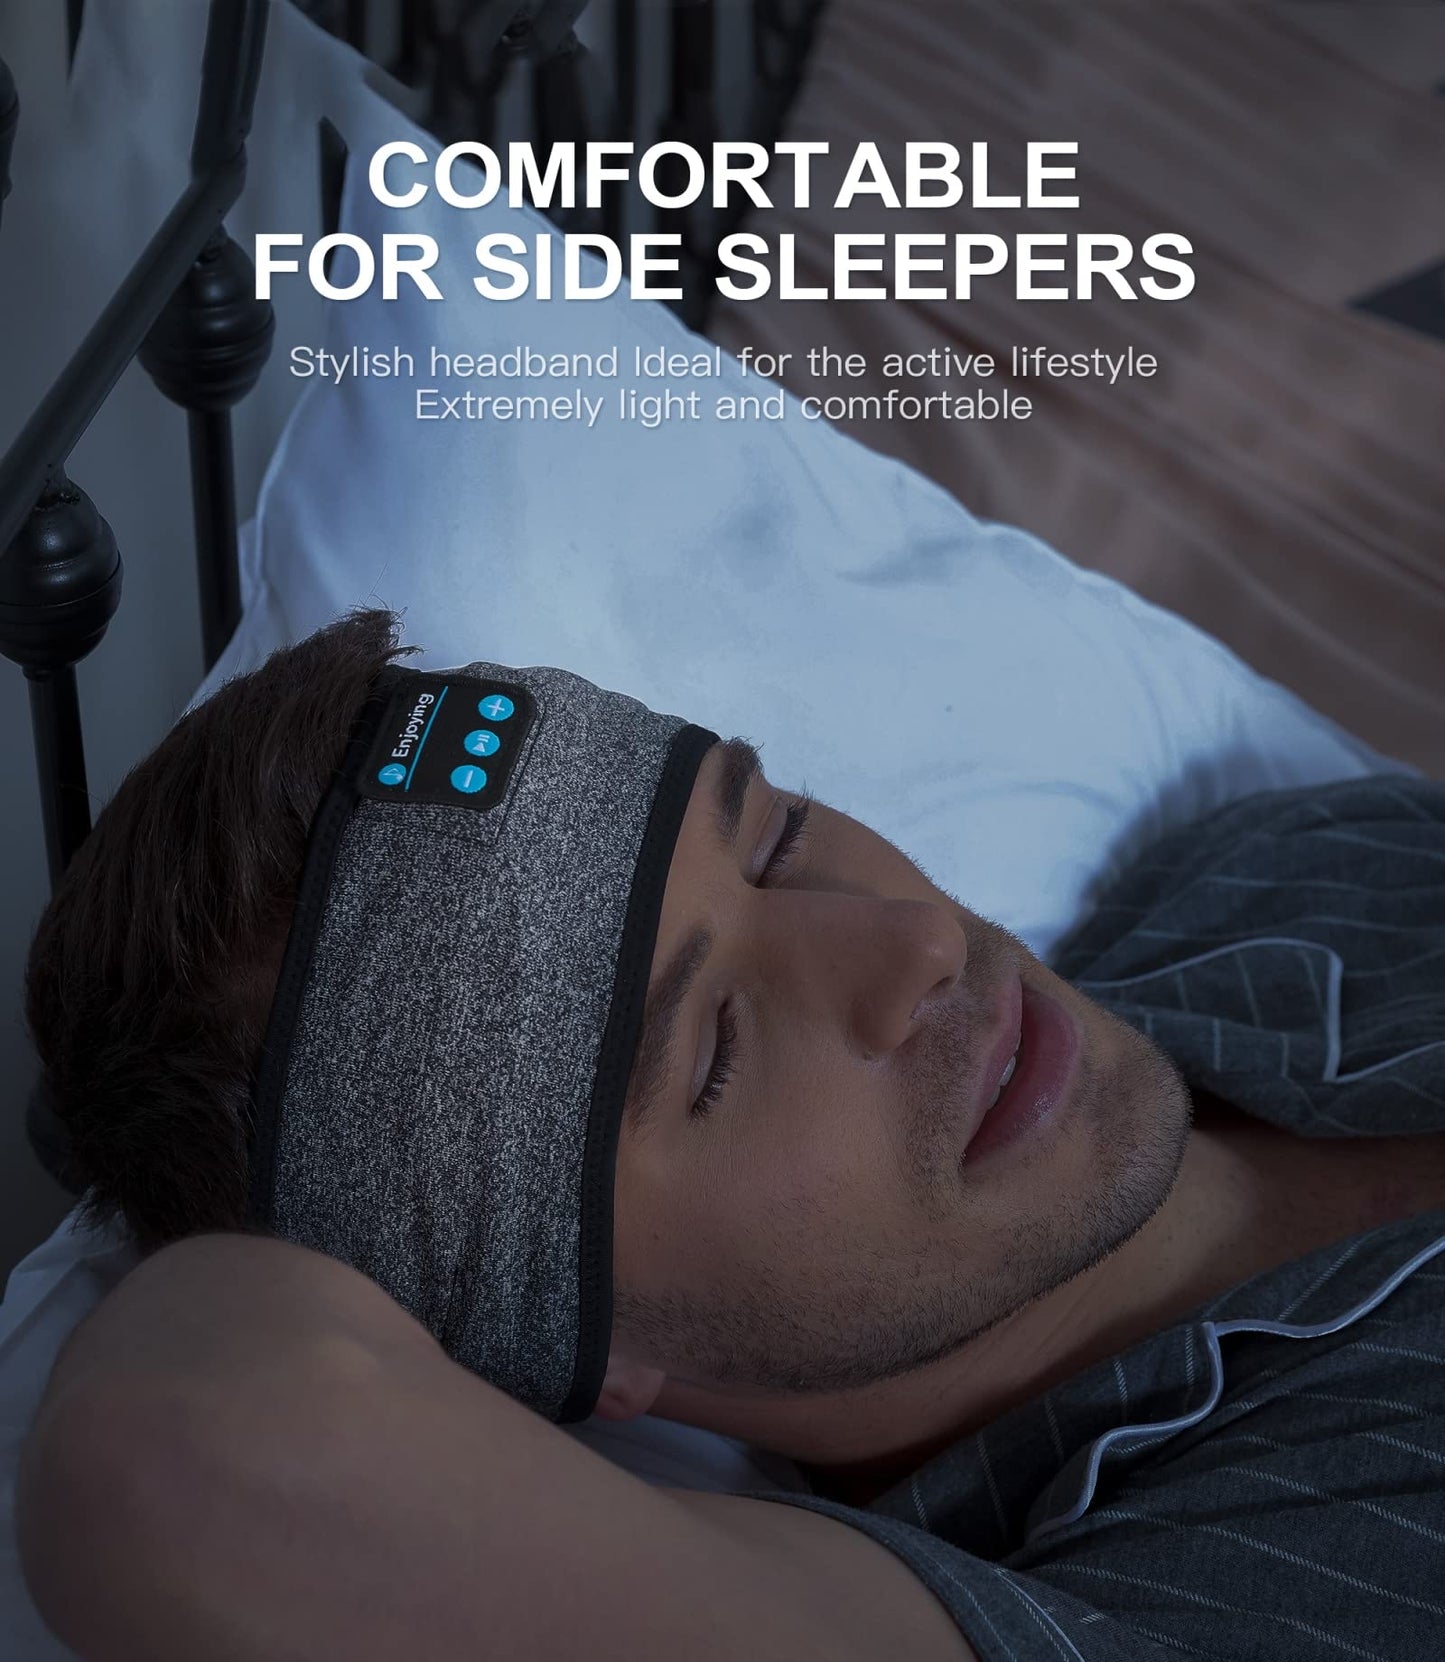 ComfySound™ Bluetooth Headband